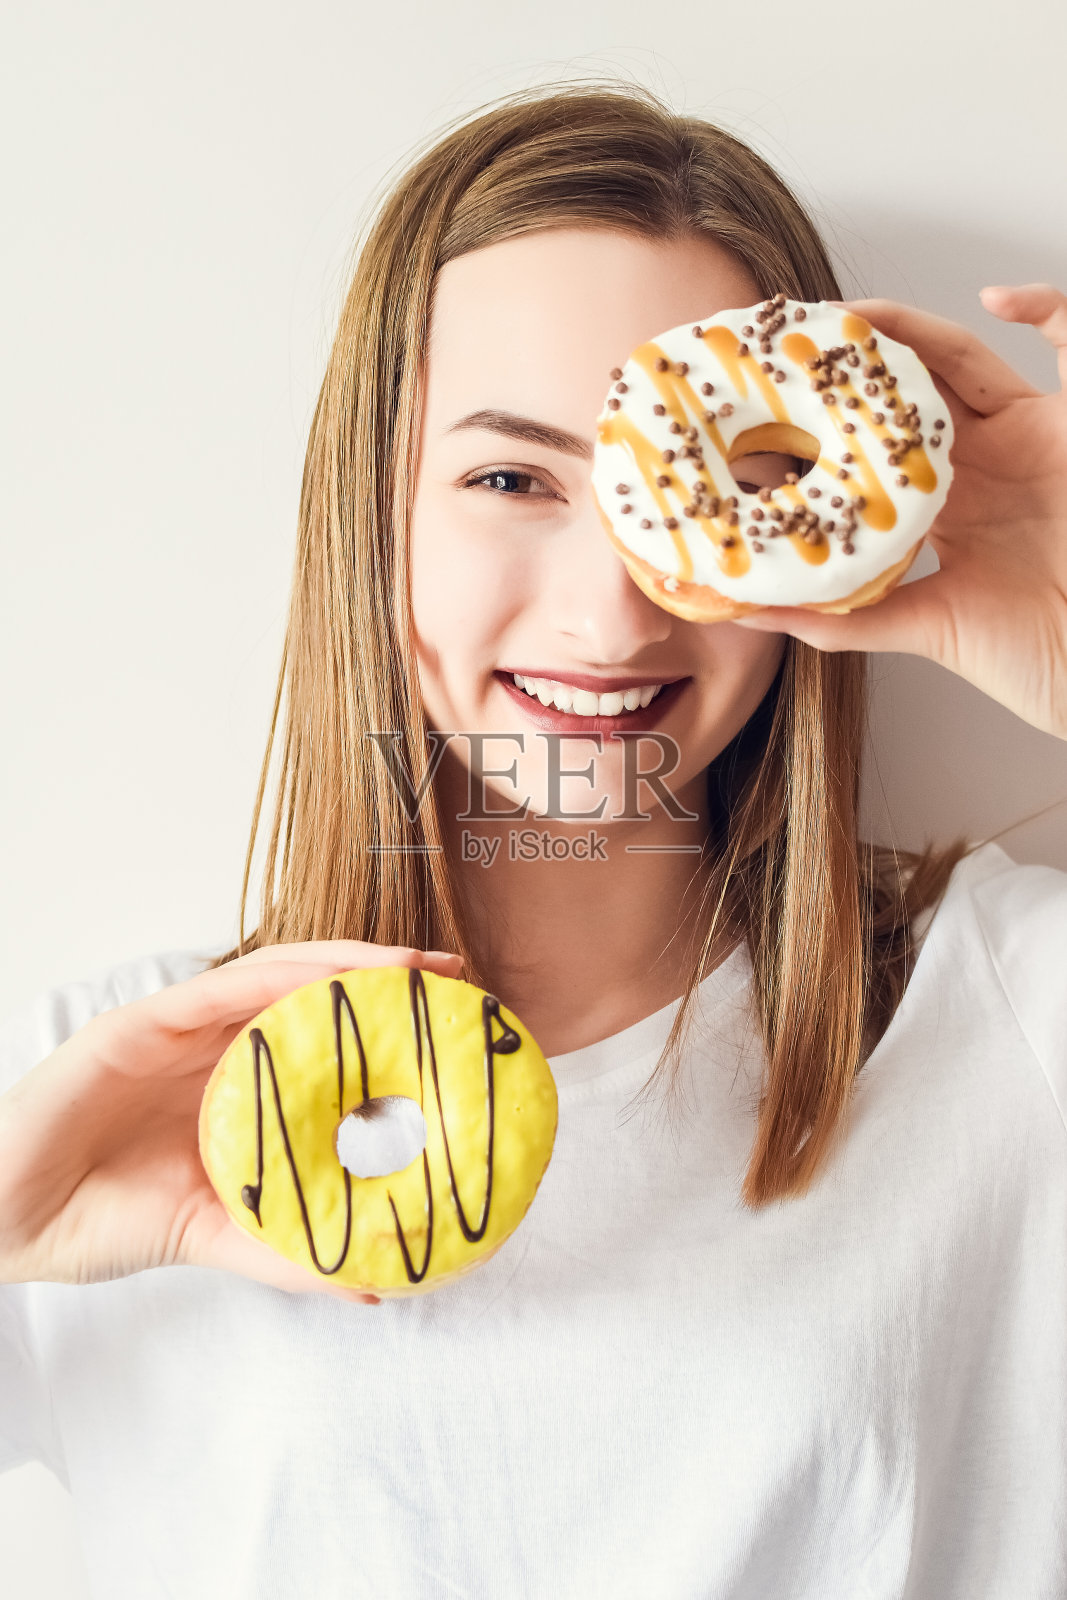 漂亮女孩拿着甜甜圈玩得很开心照片摄影图片